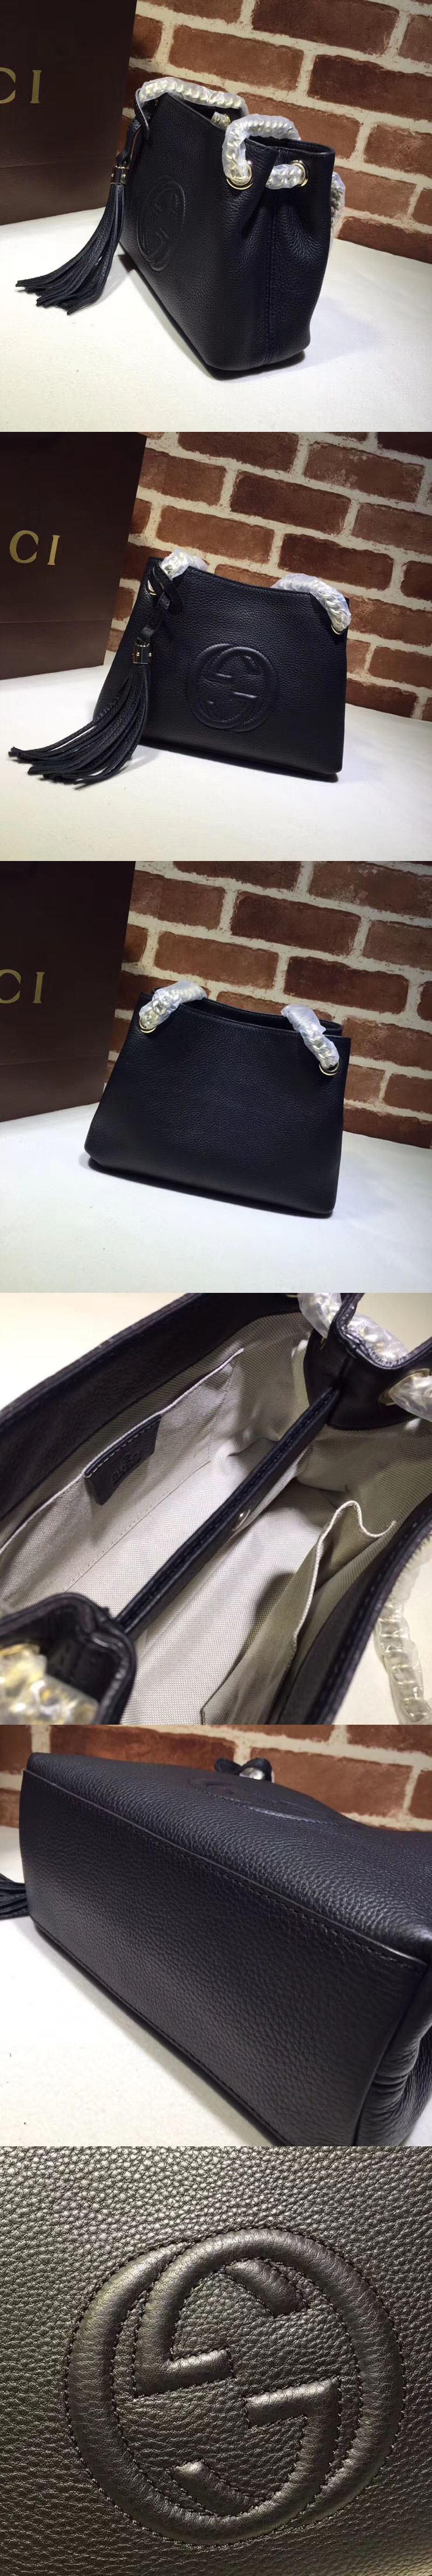 Replica Gucci 387043 GG Soho Leather Chain Strap Shoulder Bag Black